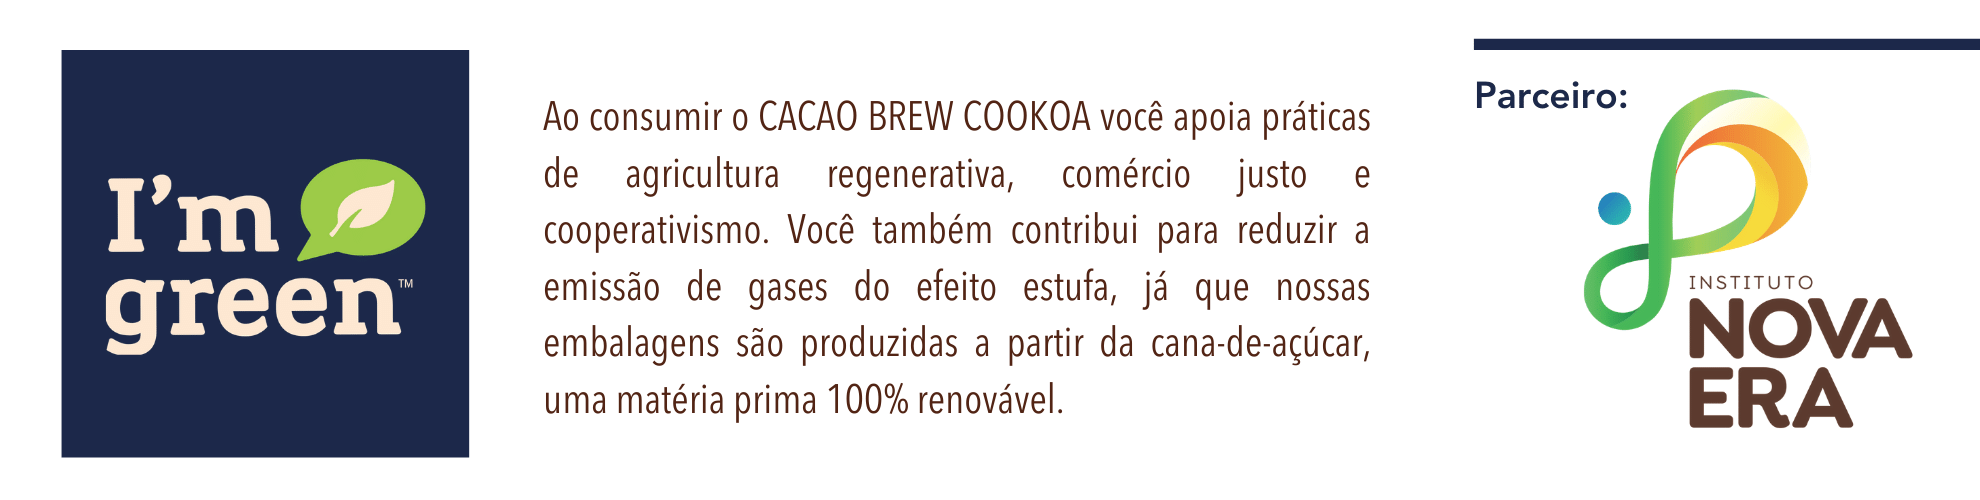 im green cacaobrew